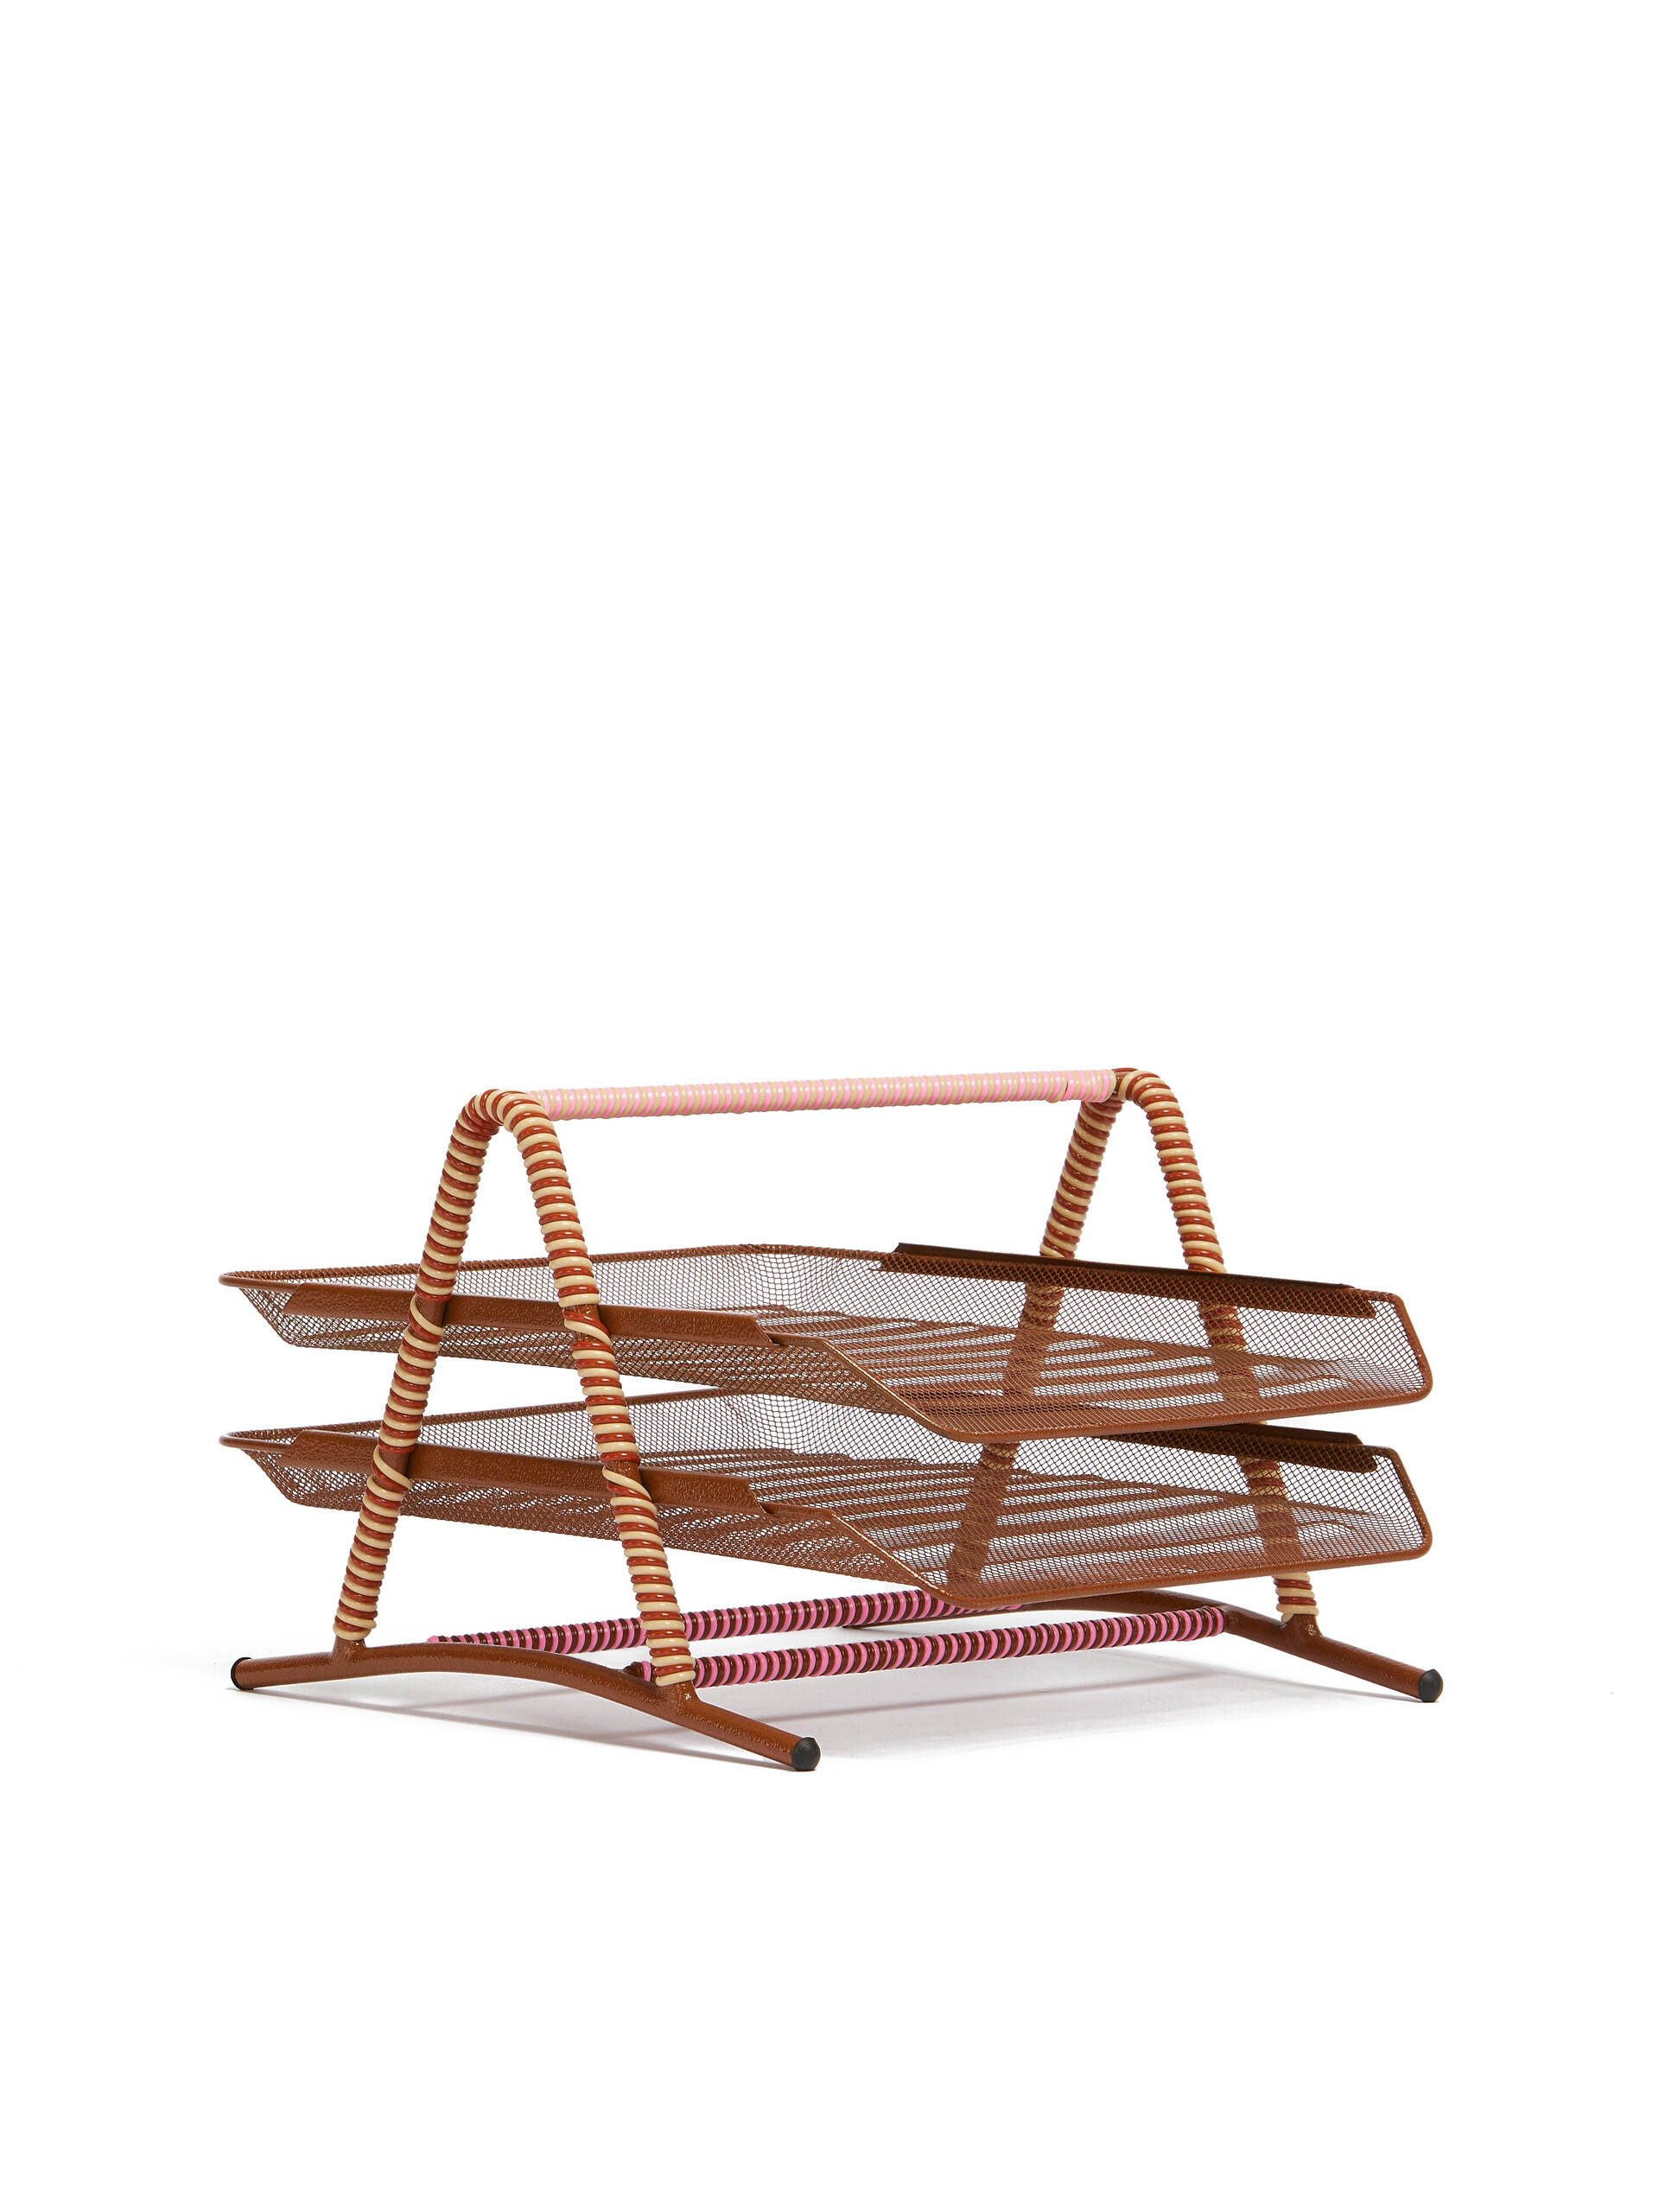 Bandeja de escritorio marrón con varias alturas Marni Market - Muebles - Image 2